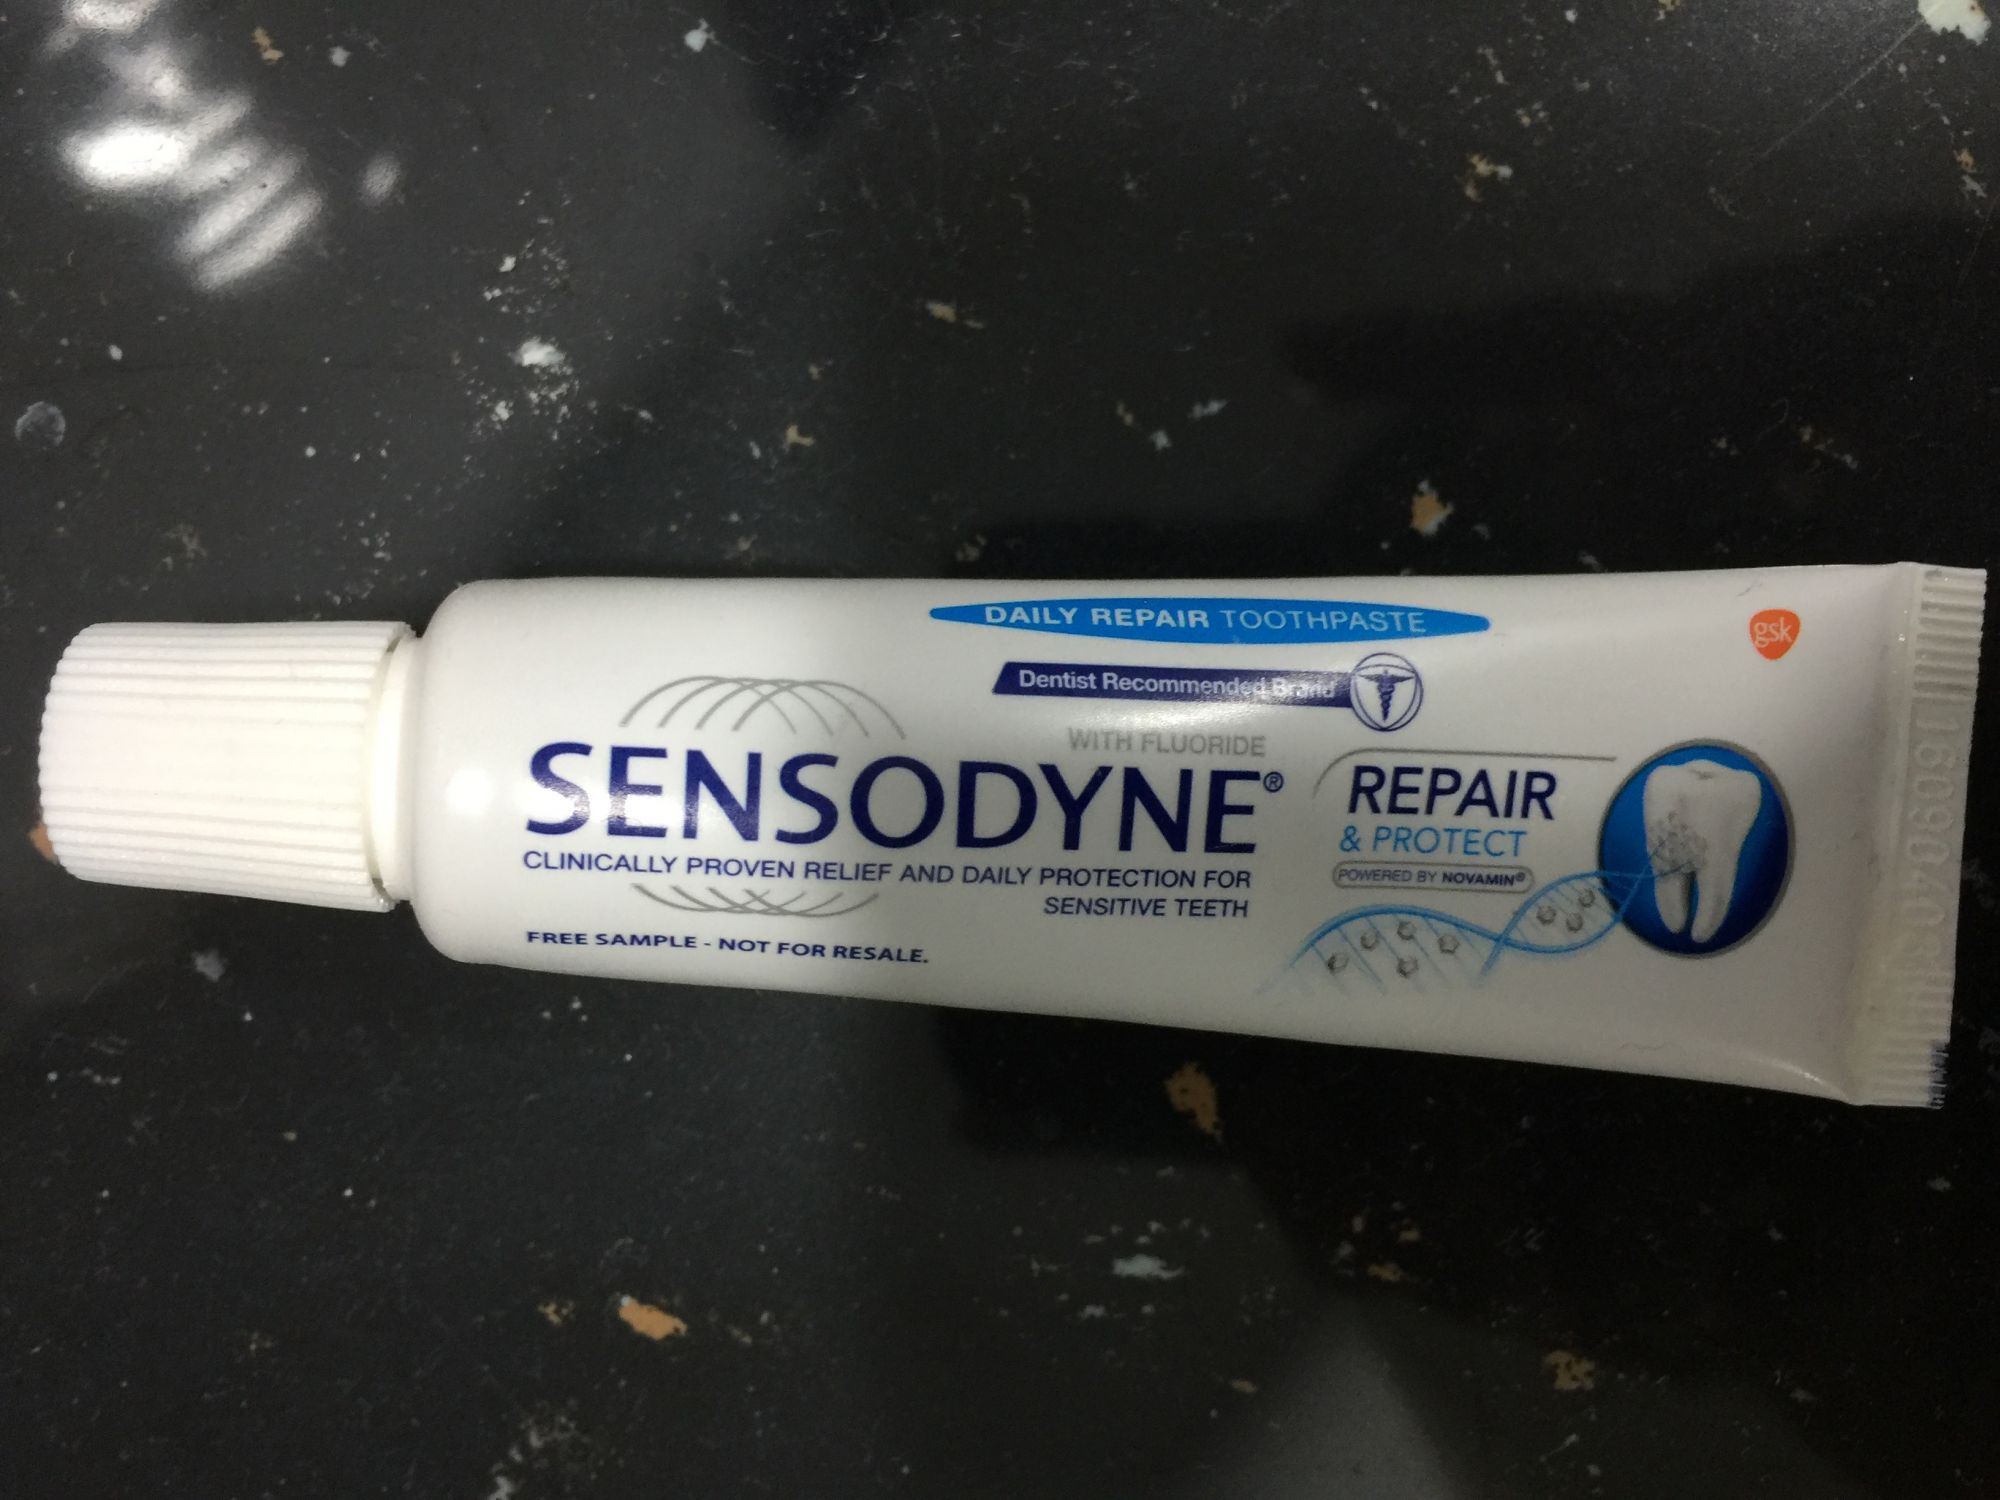 Sensodyne Repair & Protect reviews